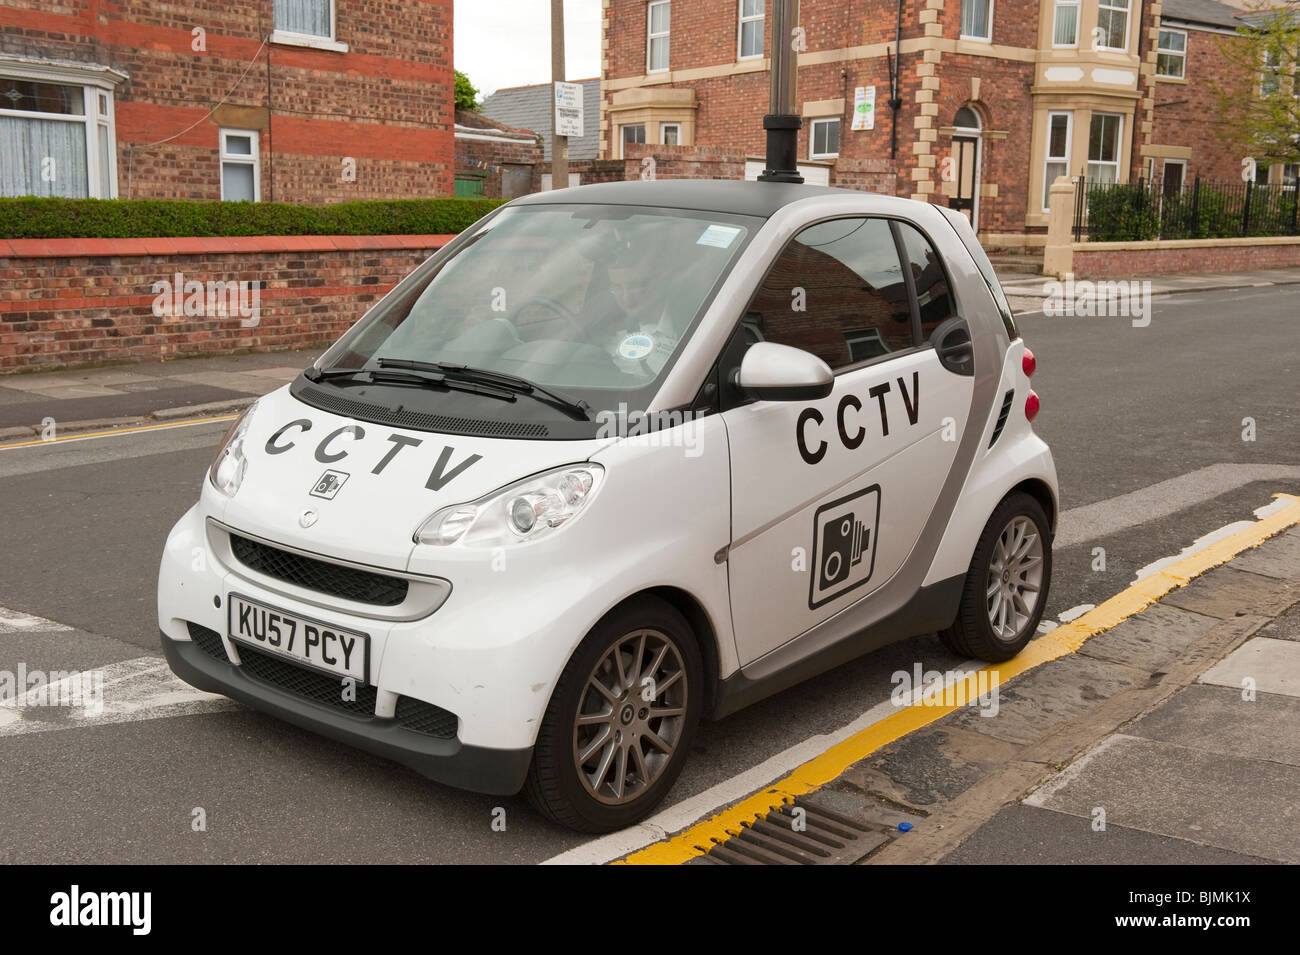 Voiture CCTV mobile pour l'émission des billets de stationnement circulation UK Banque D'Images